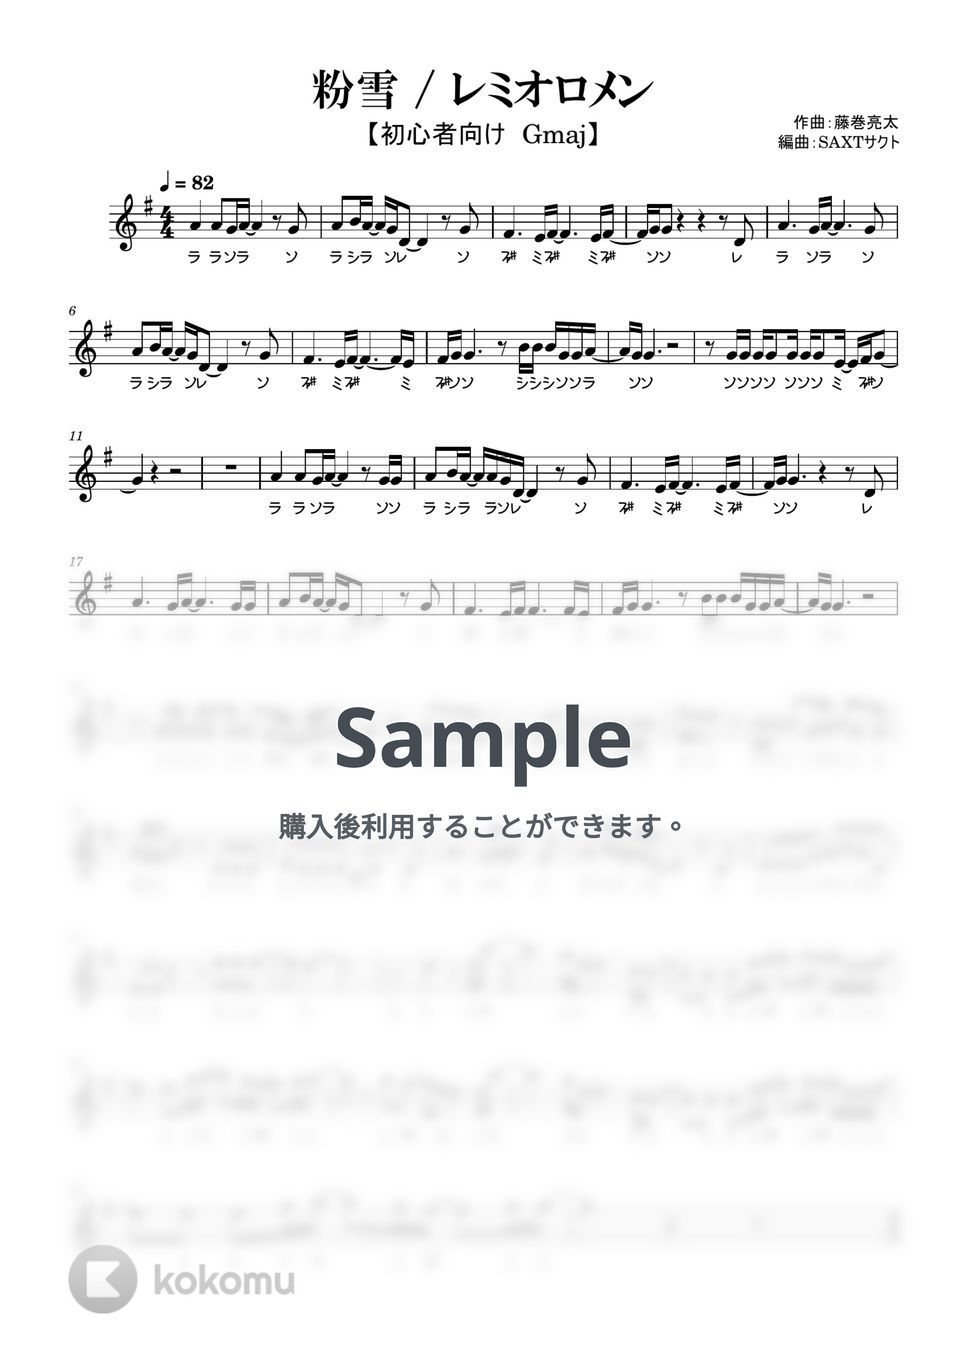 レミオロメン - 粉雪 (めちゃラク譜) by SAXTサクト